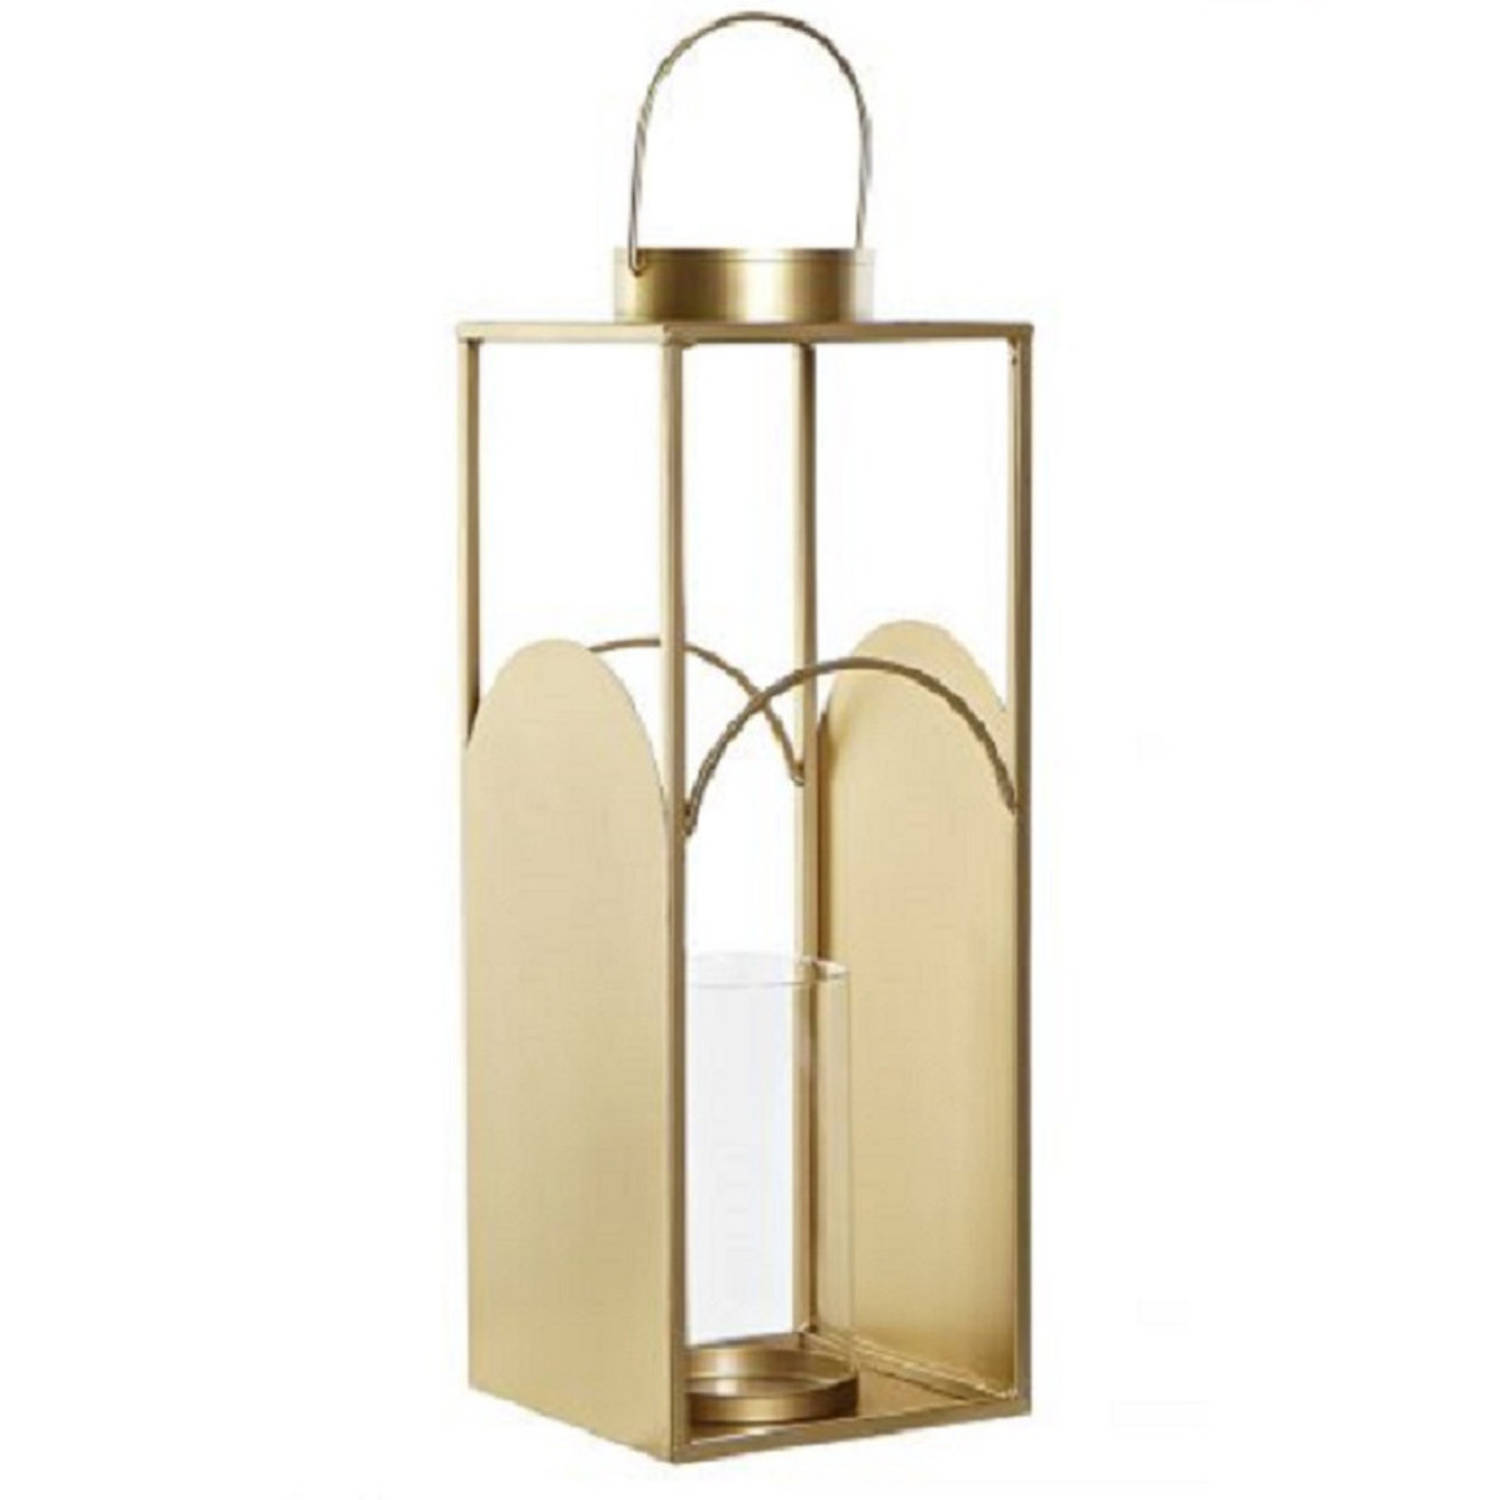 Metalen kaarsenhouder / lantaarn goud met glas 45 cm - Lantaarns